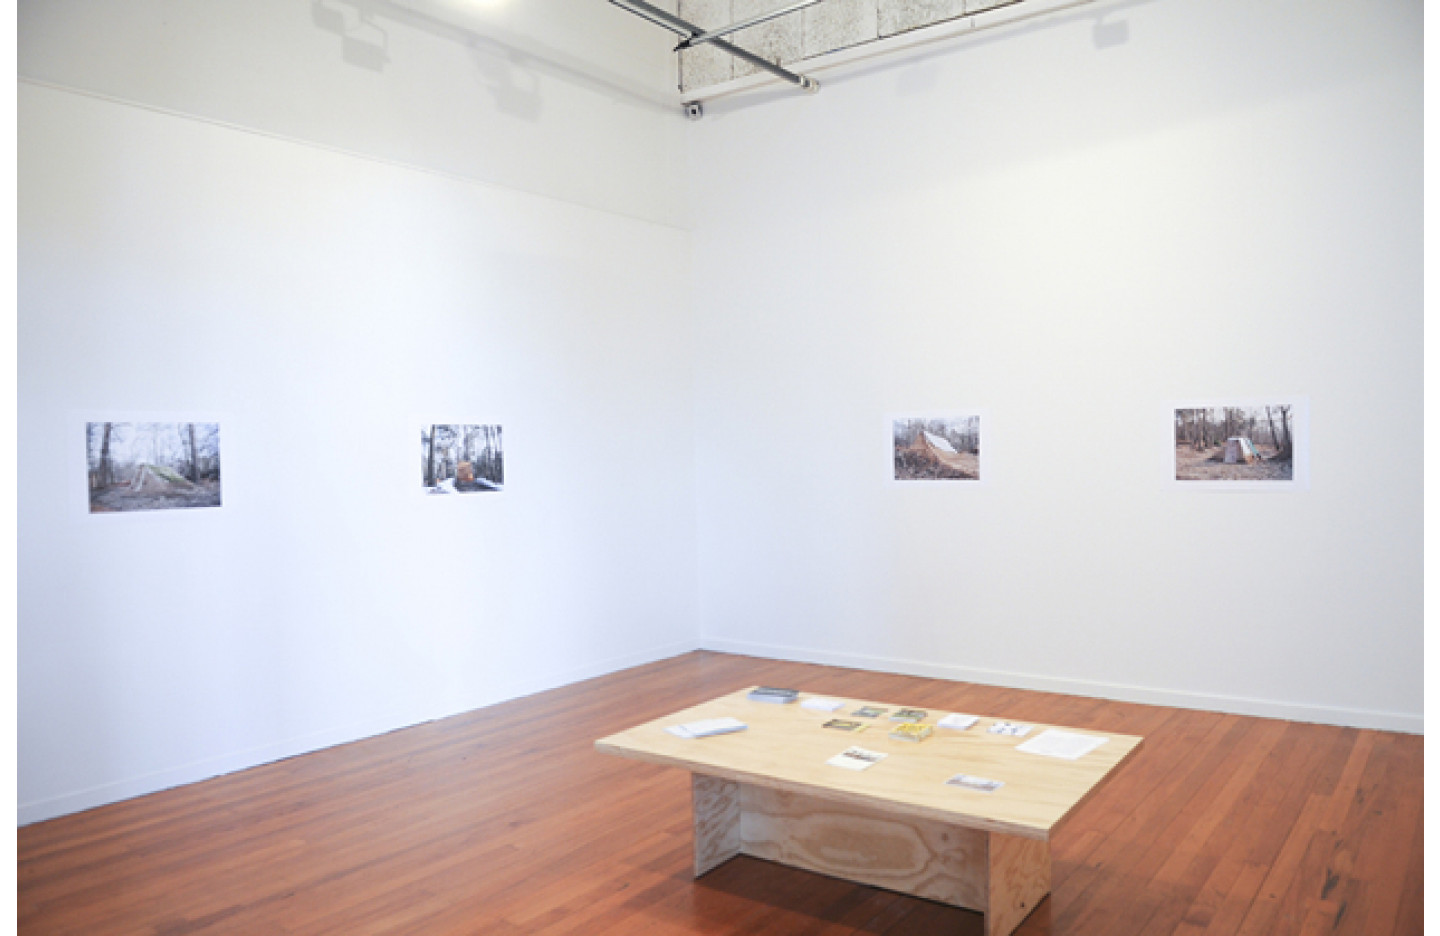 Under, Ramp Gallery (2013)